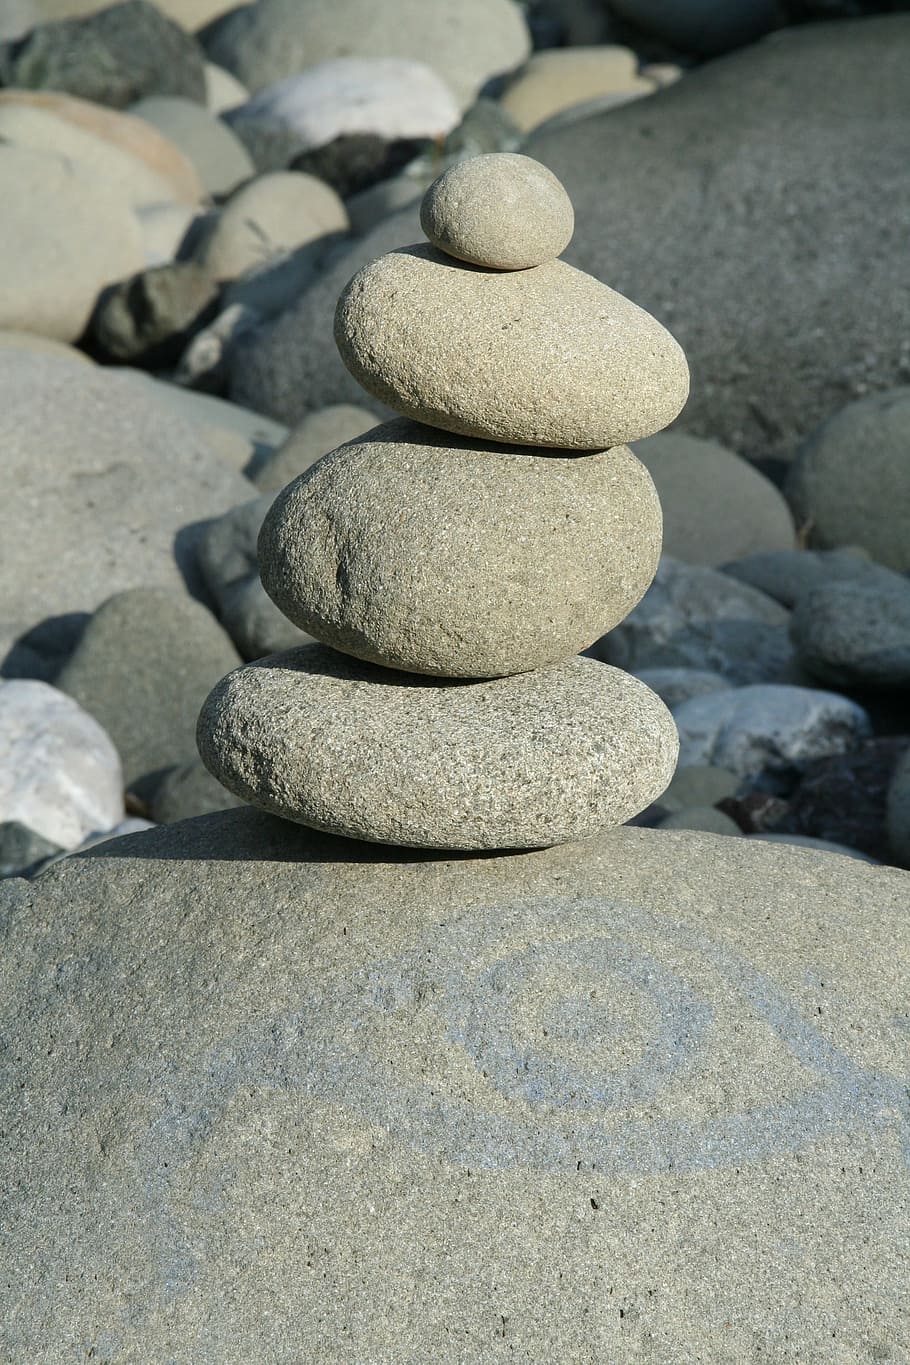 Piedras, río, torre de piedra, torre, guijarro, equilibrio, piedra - Objeto, roca - Objeto, zen-like, estabilidad